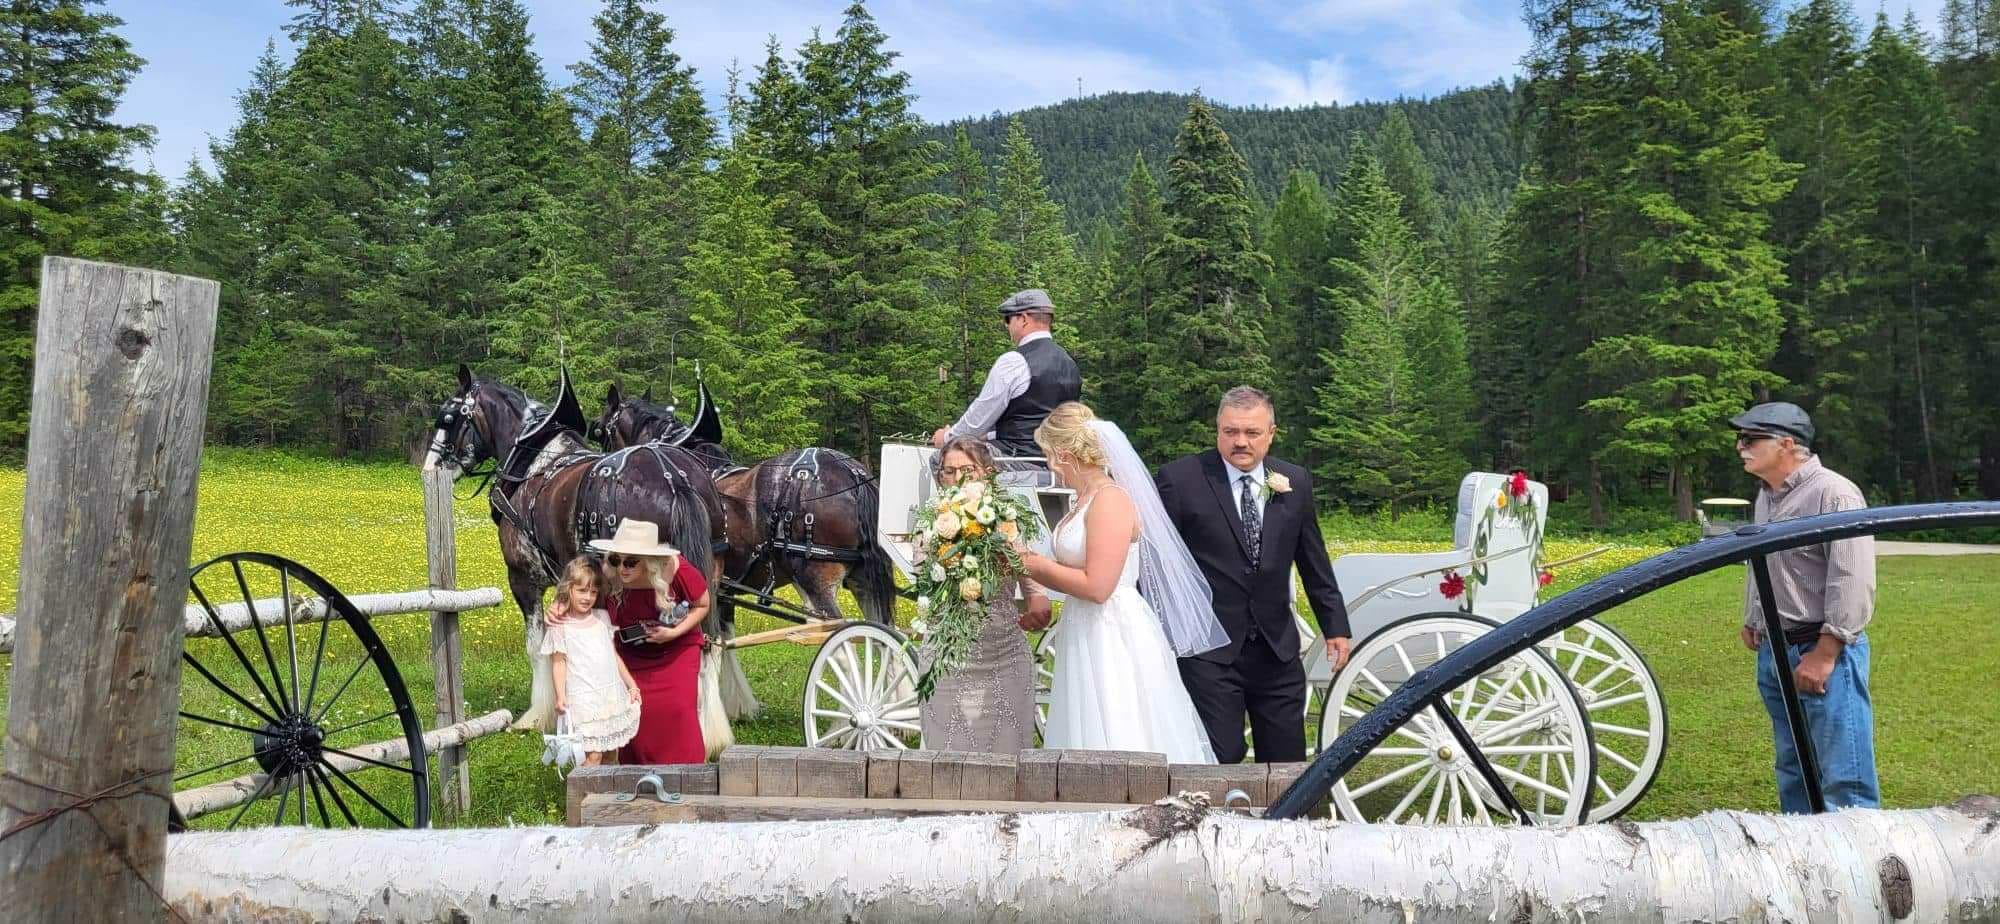 Okanagan wedding venue, horses